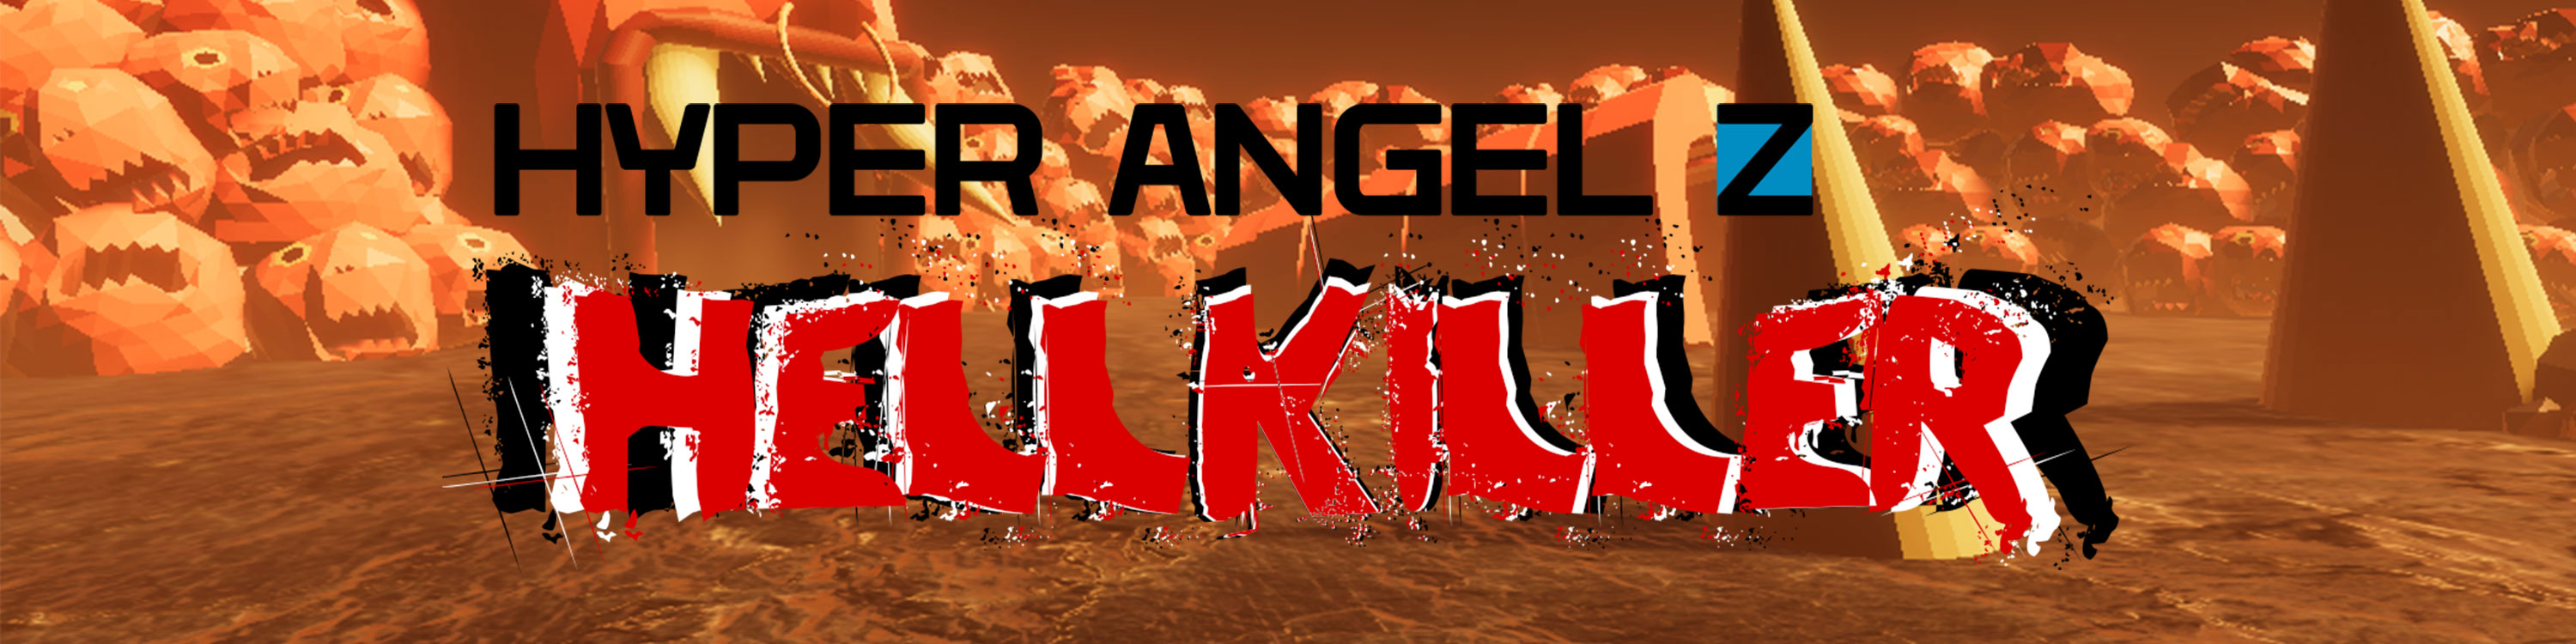 Hyper Angel Z - Hellkiller